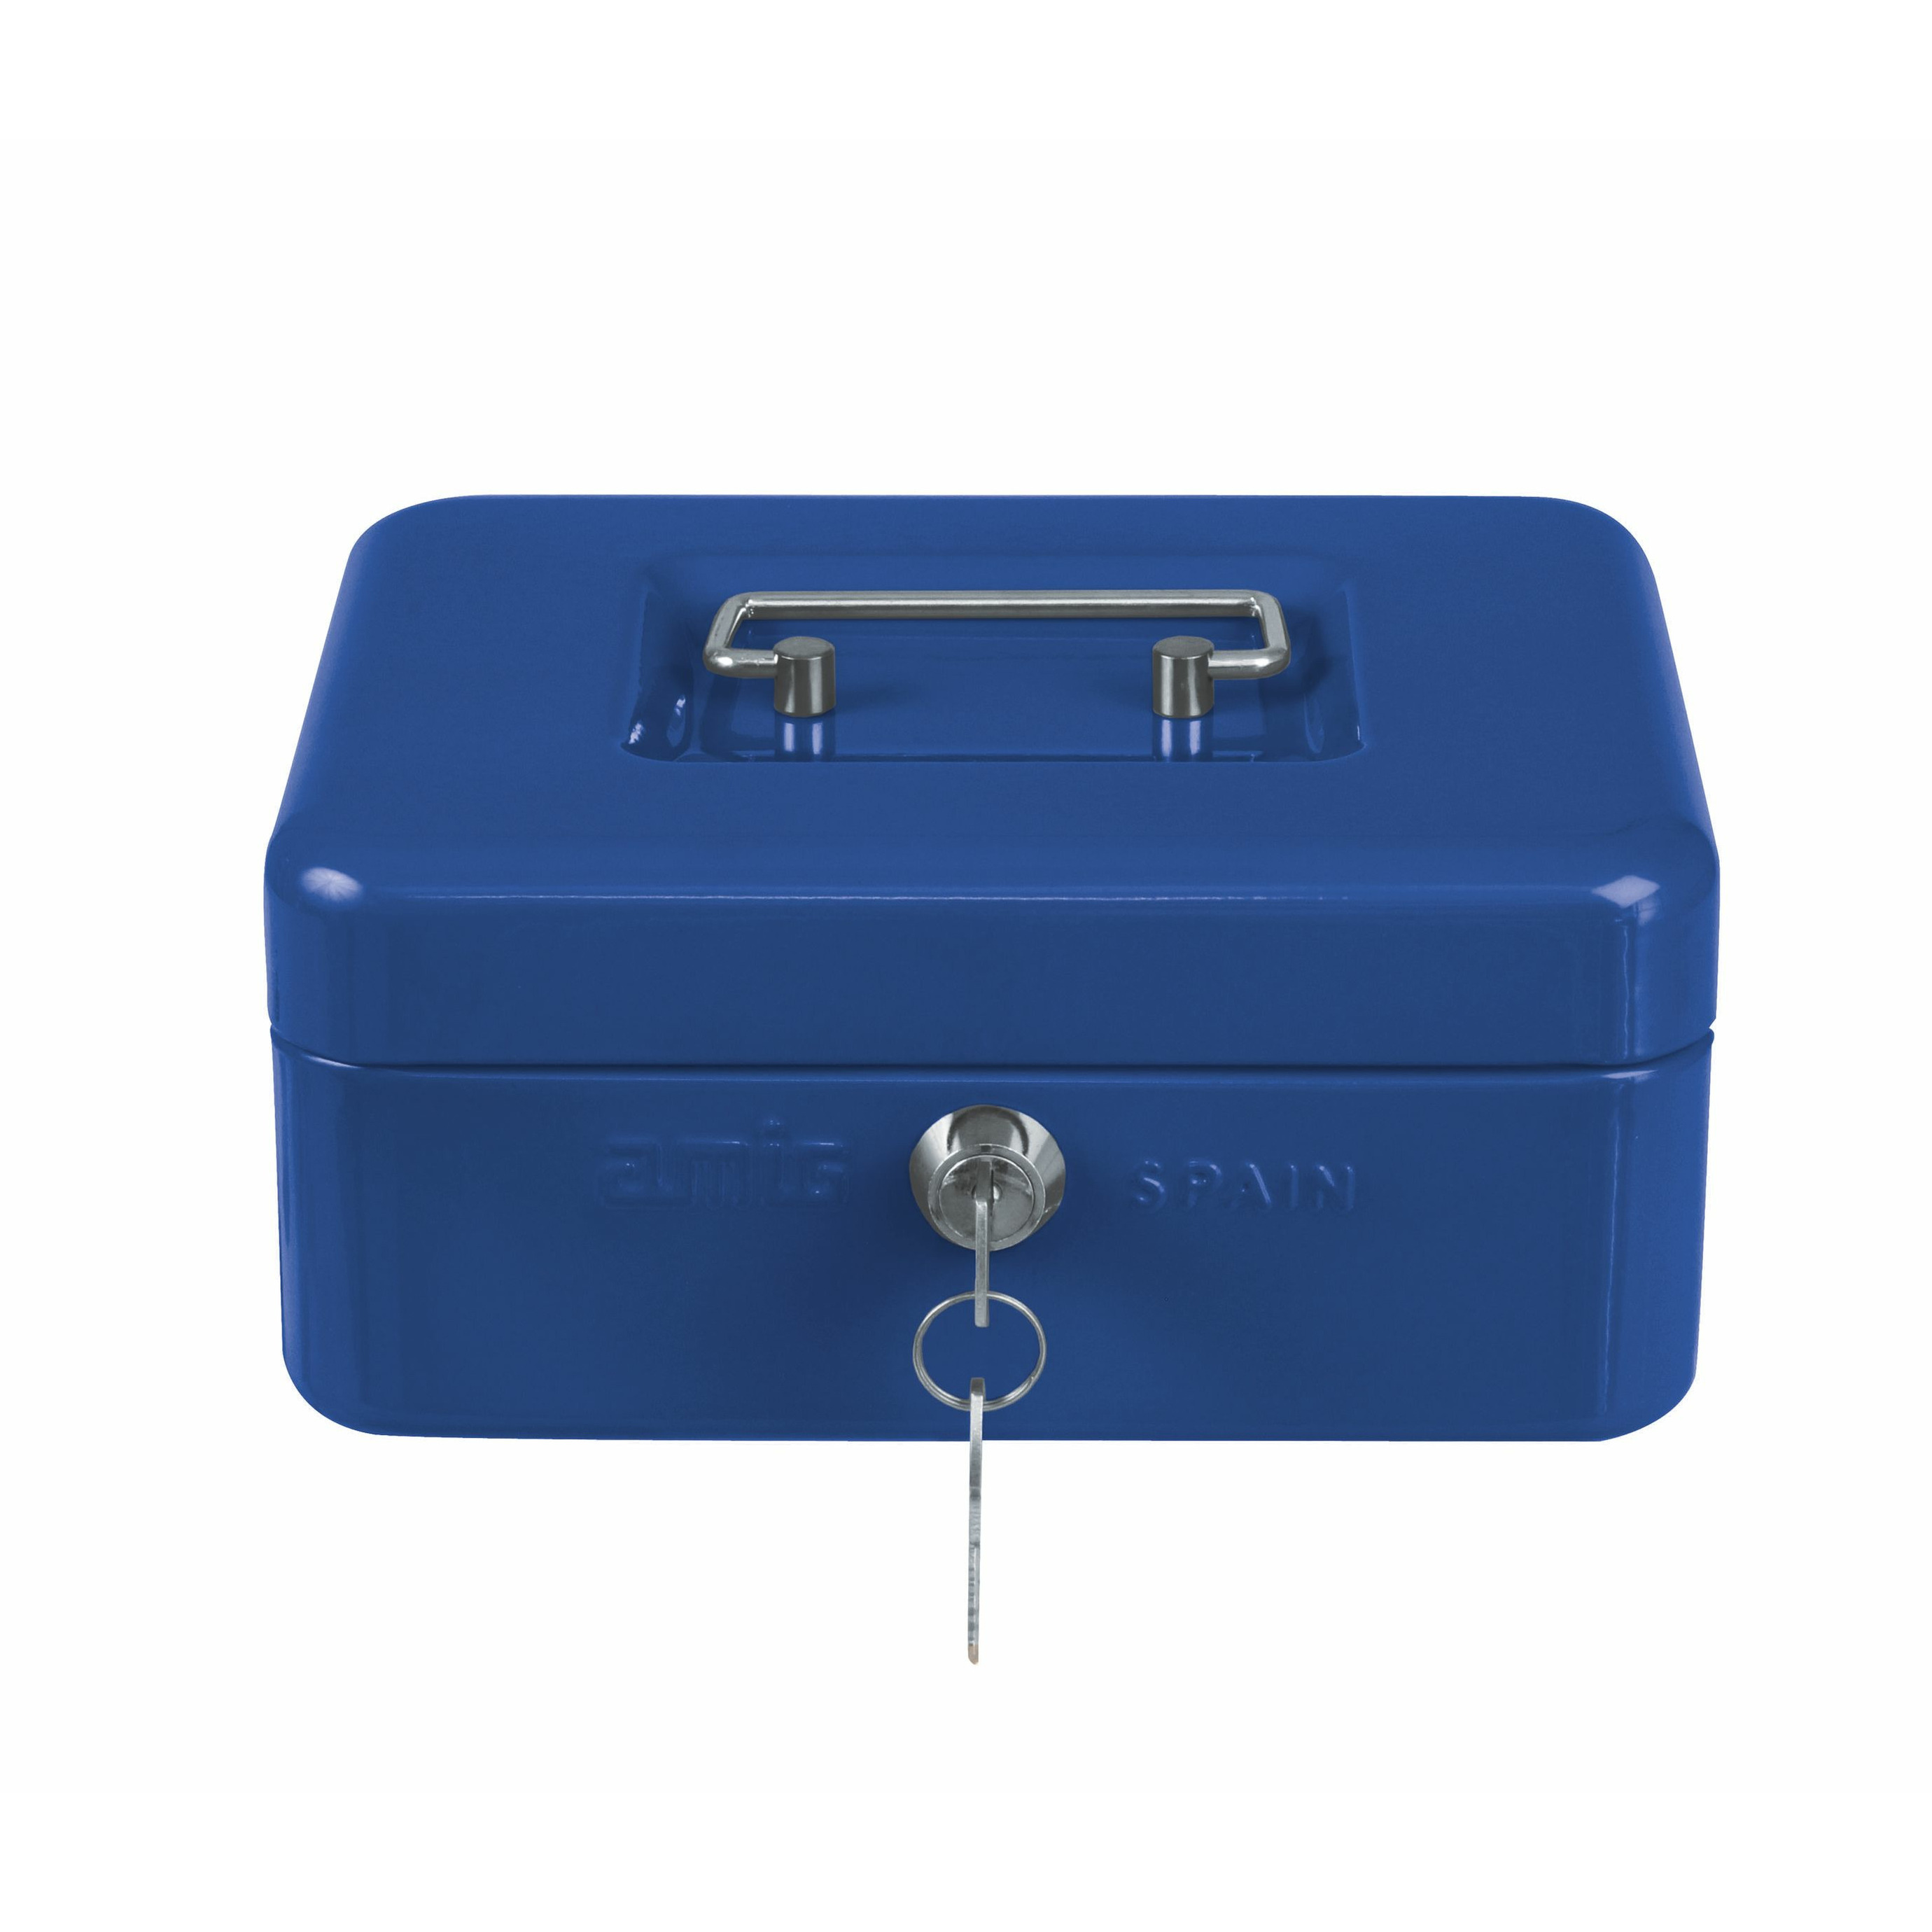 Geldkistje met 2 sleutels blauw staal muntbakje 15 x 11 x 7 cm inbraakbeveiliging